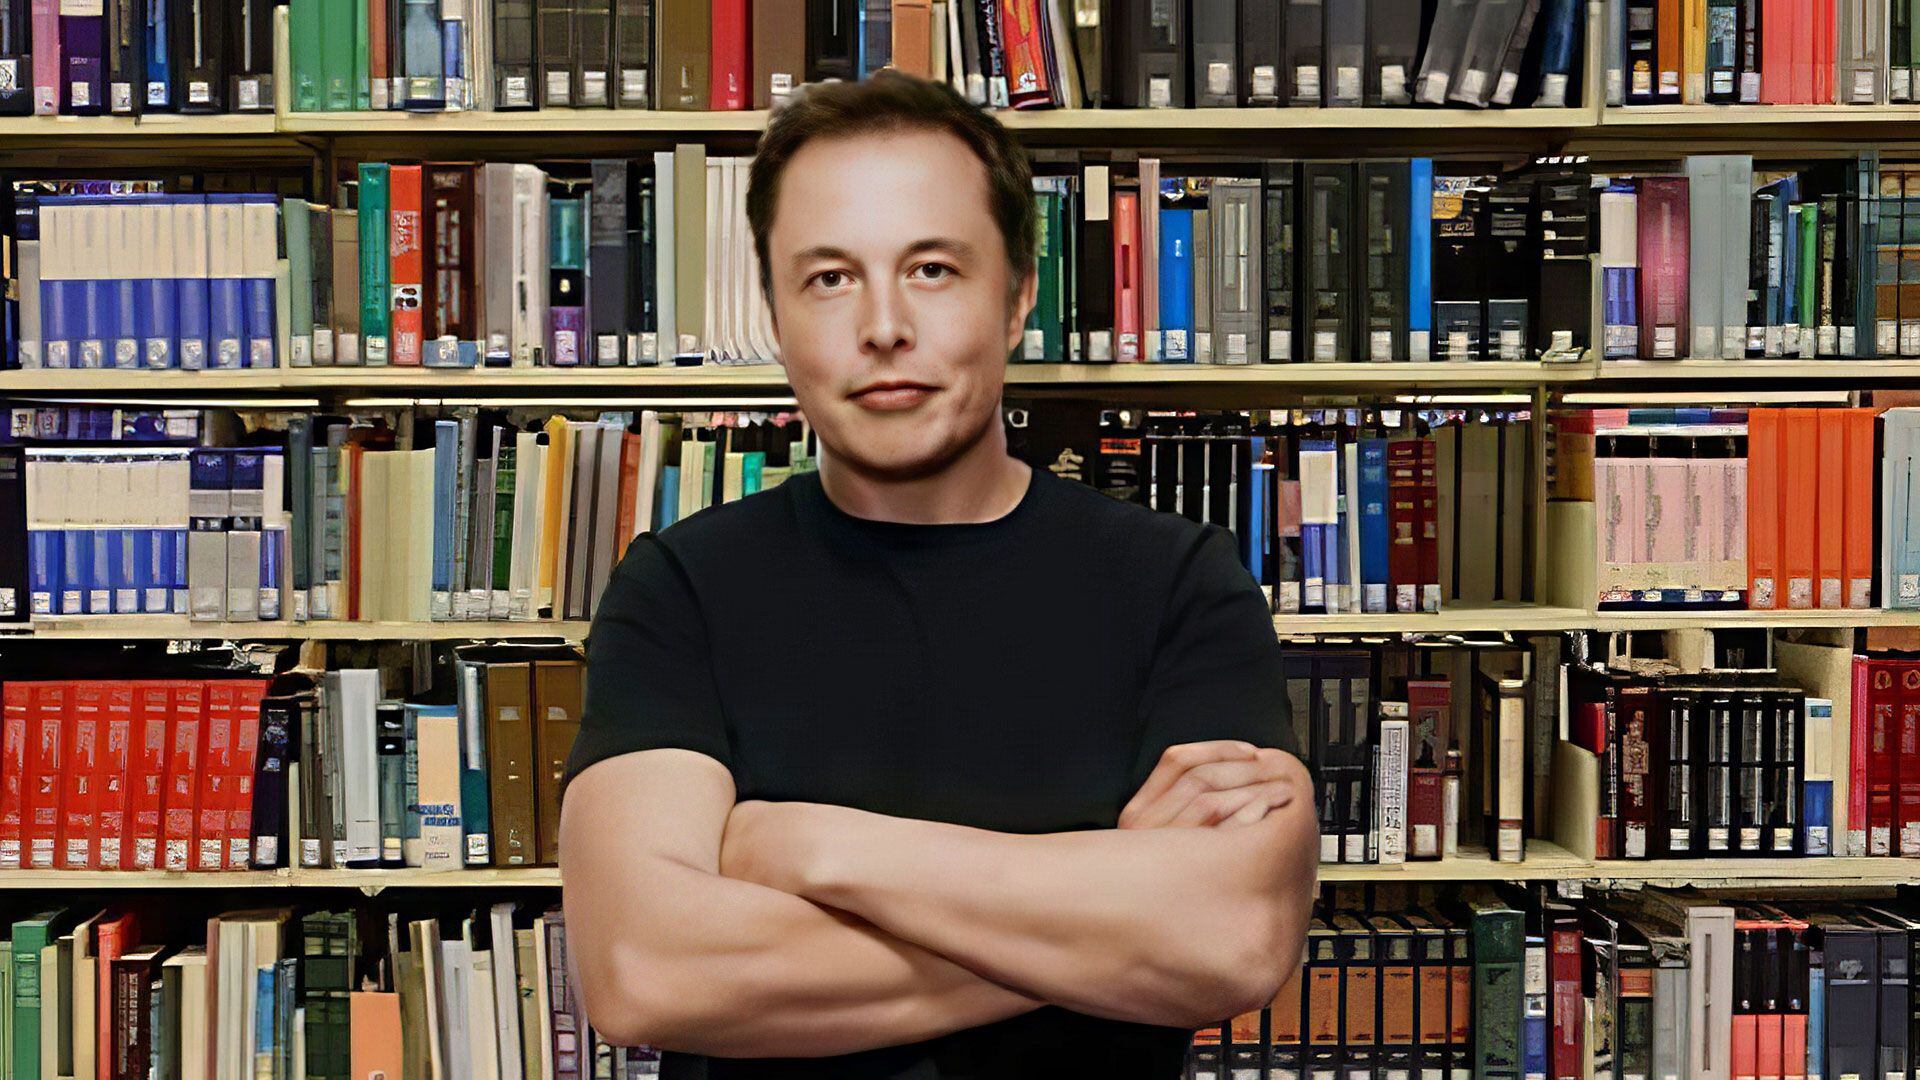 Libros elegidos por Elon Musk